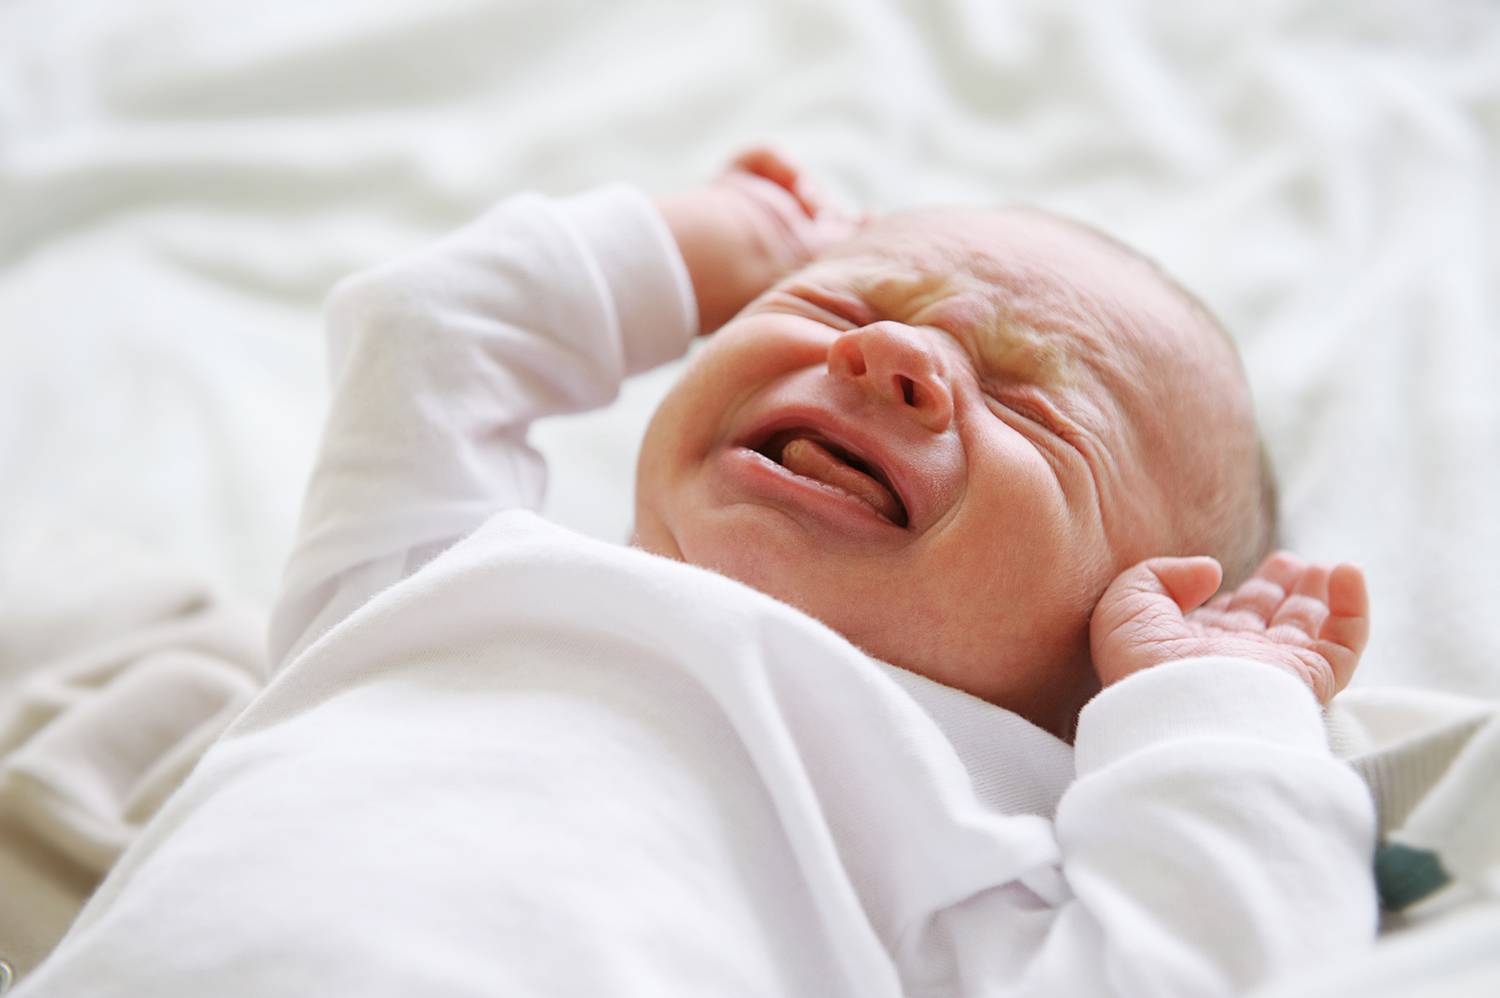 Có rất nhiều nguyên nhân khiến bé sơ sinh khó ngủ, trằn trọc làm cho chất lượng giấc ngủ bị ảnh hưởng (nguồn ảnh: Internet)